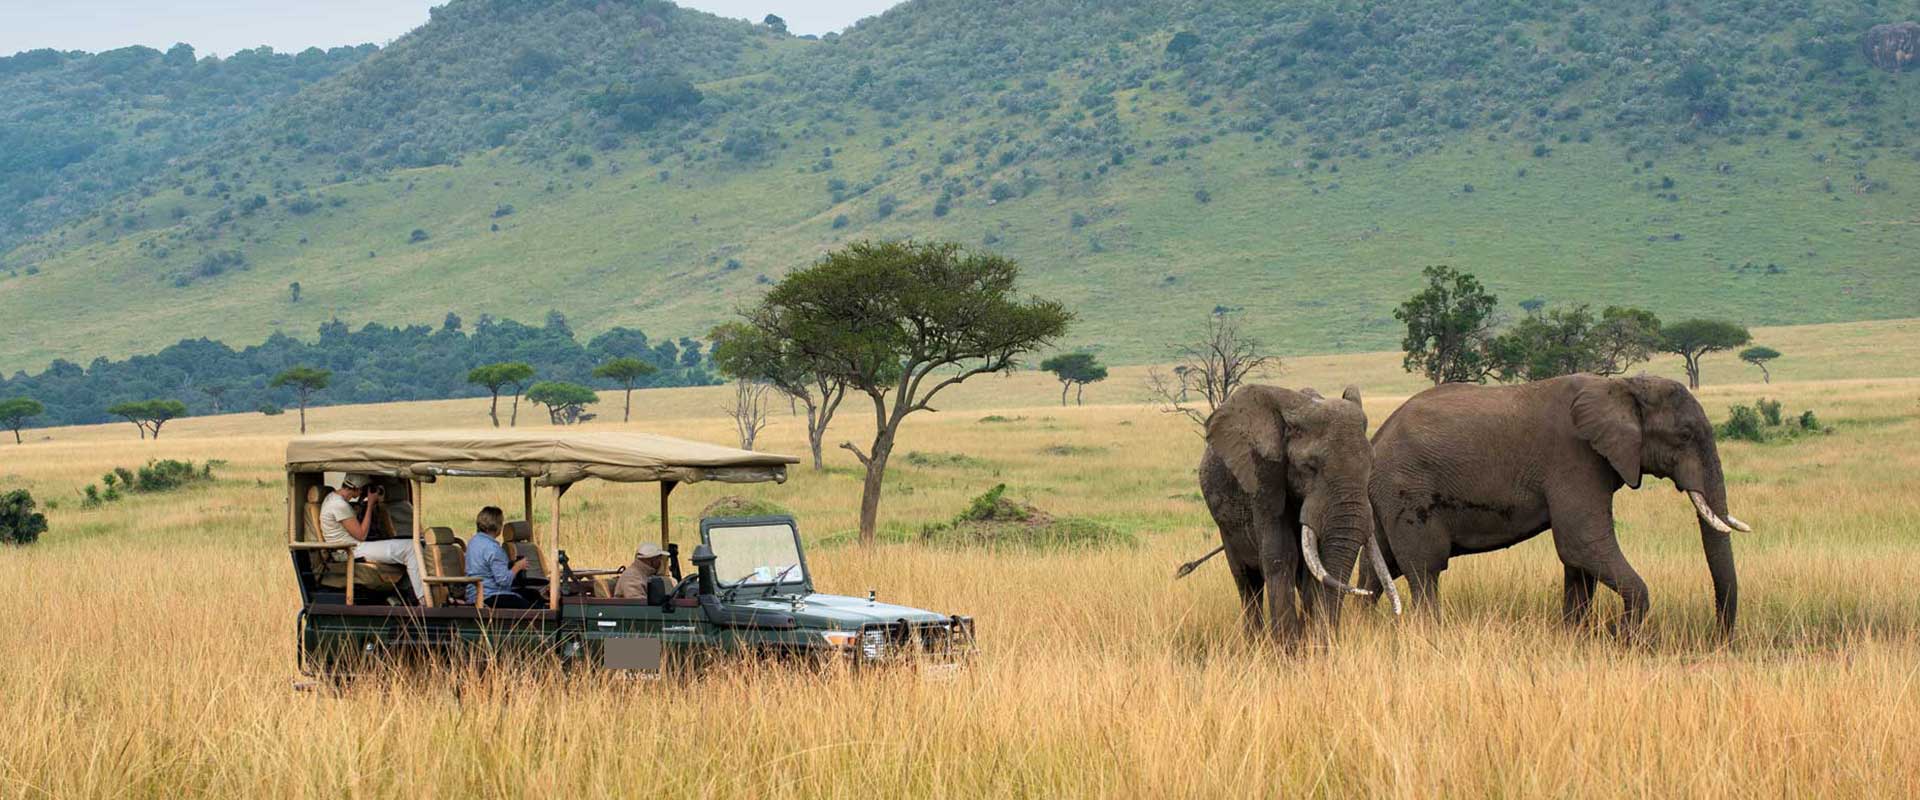 5 Days 4 Nights Nairobi Nakuru Masai Mara Safari Trippygo Tours And Travel